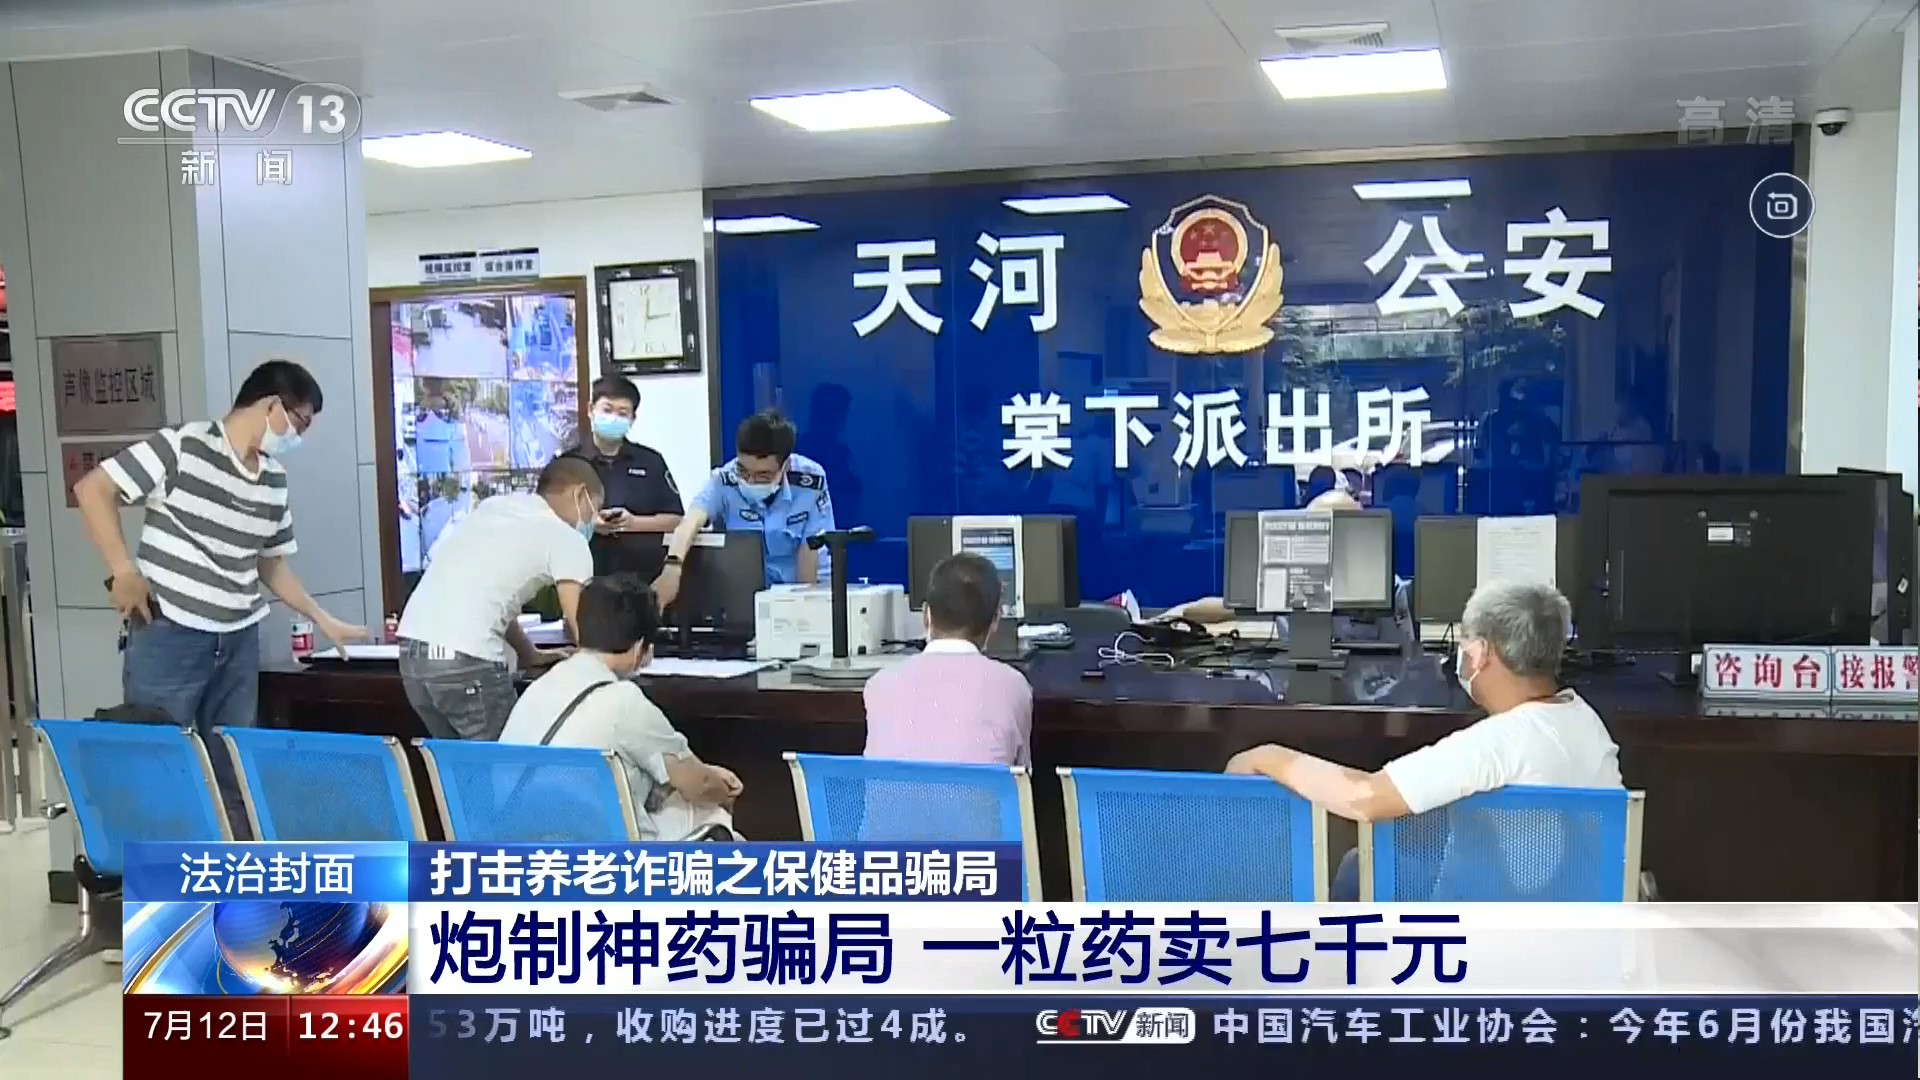 20220712中央电视台CCTV-13新闻频道 法治在线 法治封面 打击养老诈骗之保健品骗局